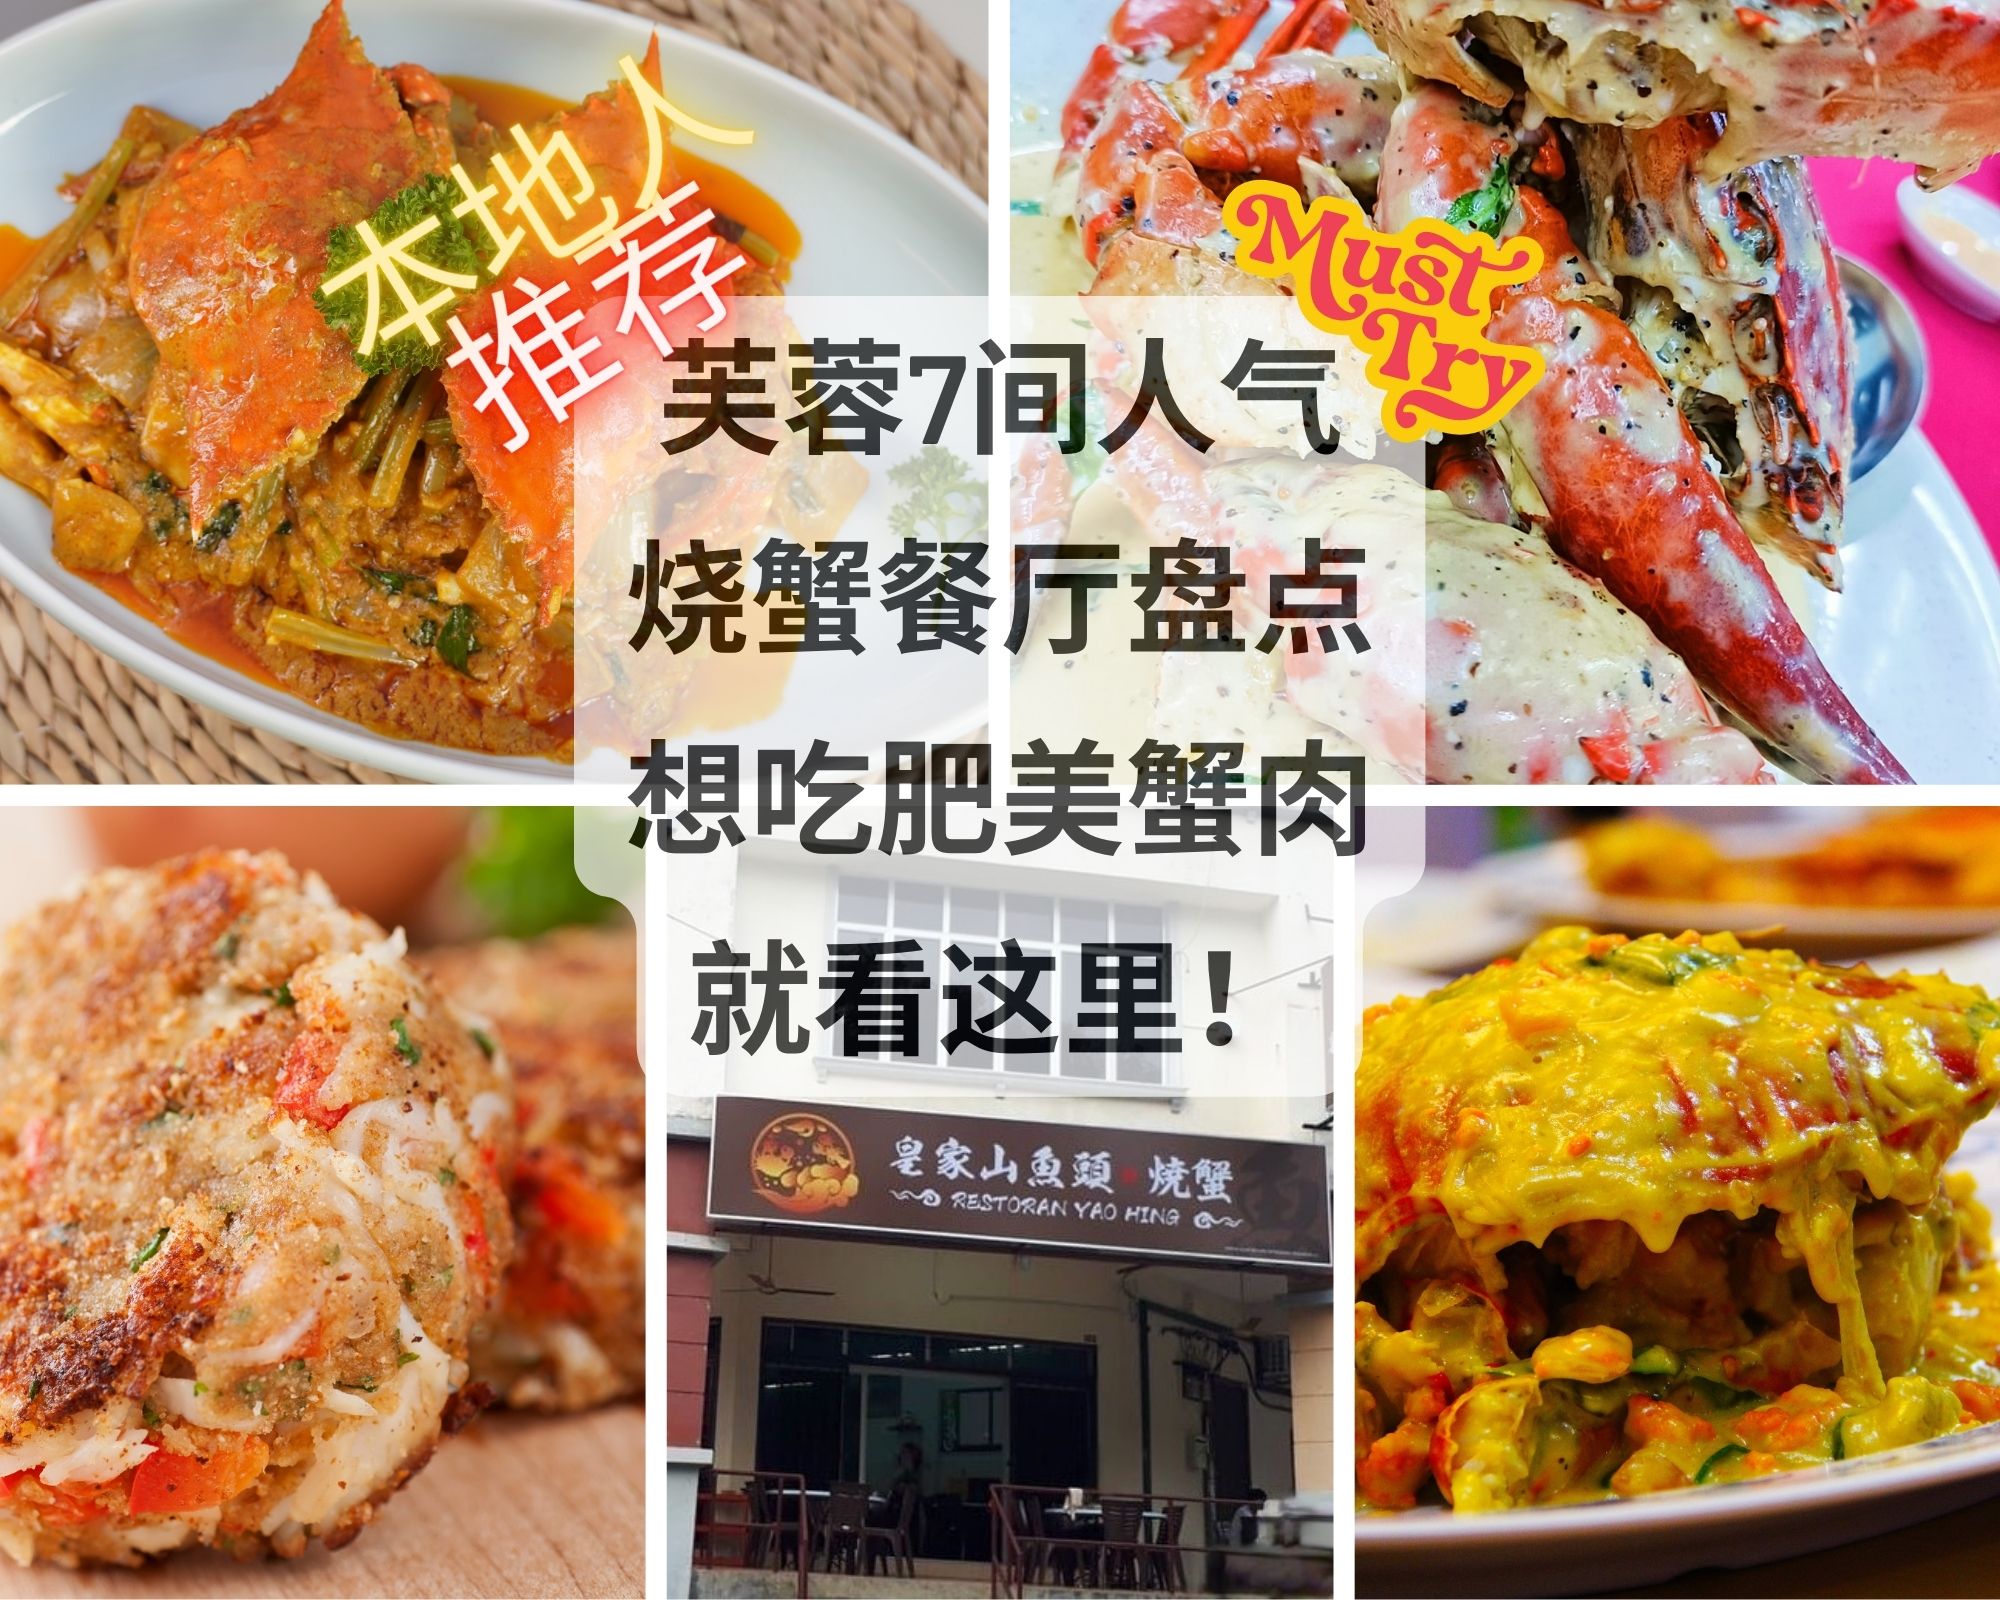 森美兰芙蓉炒烧蟹餐厅好评推荐7间当地人都爱去吃的肥美蟹肉